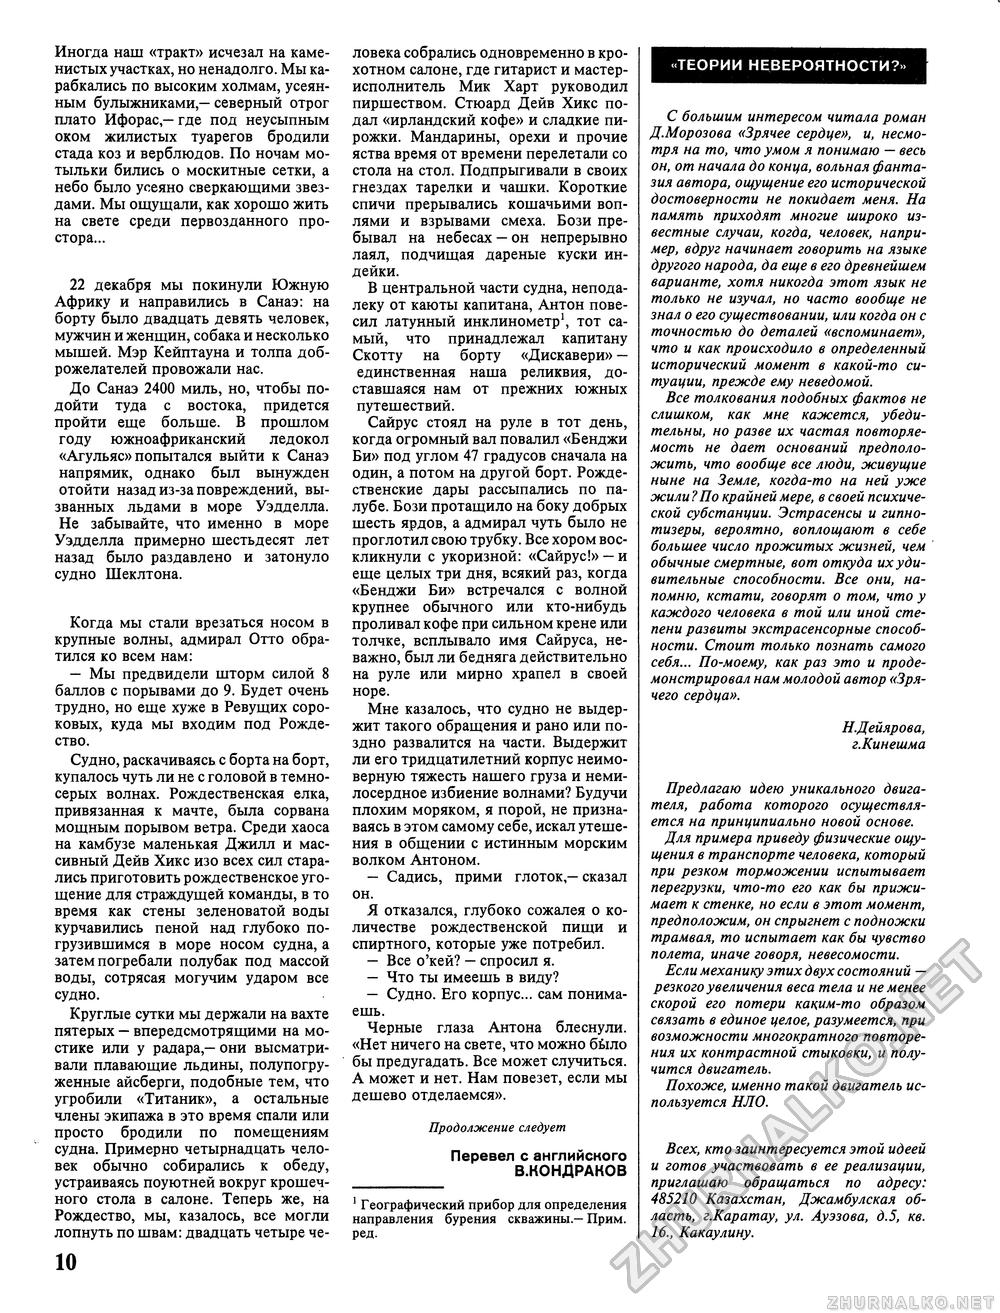 Вокруг света 1992-07, страница 12